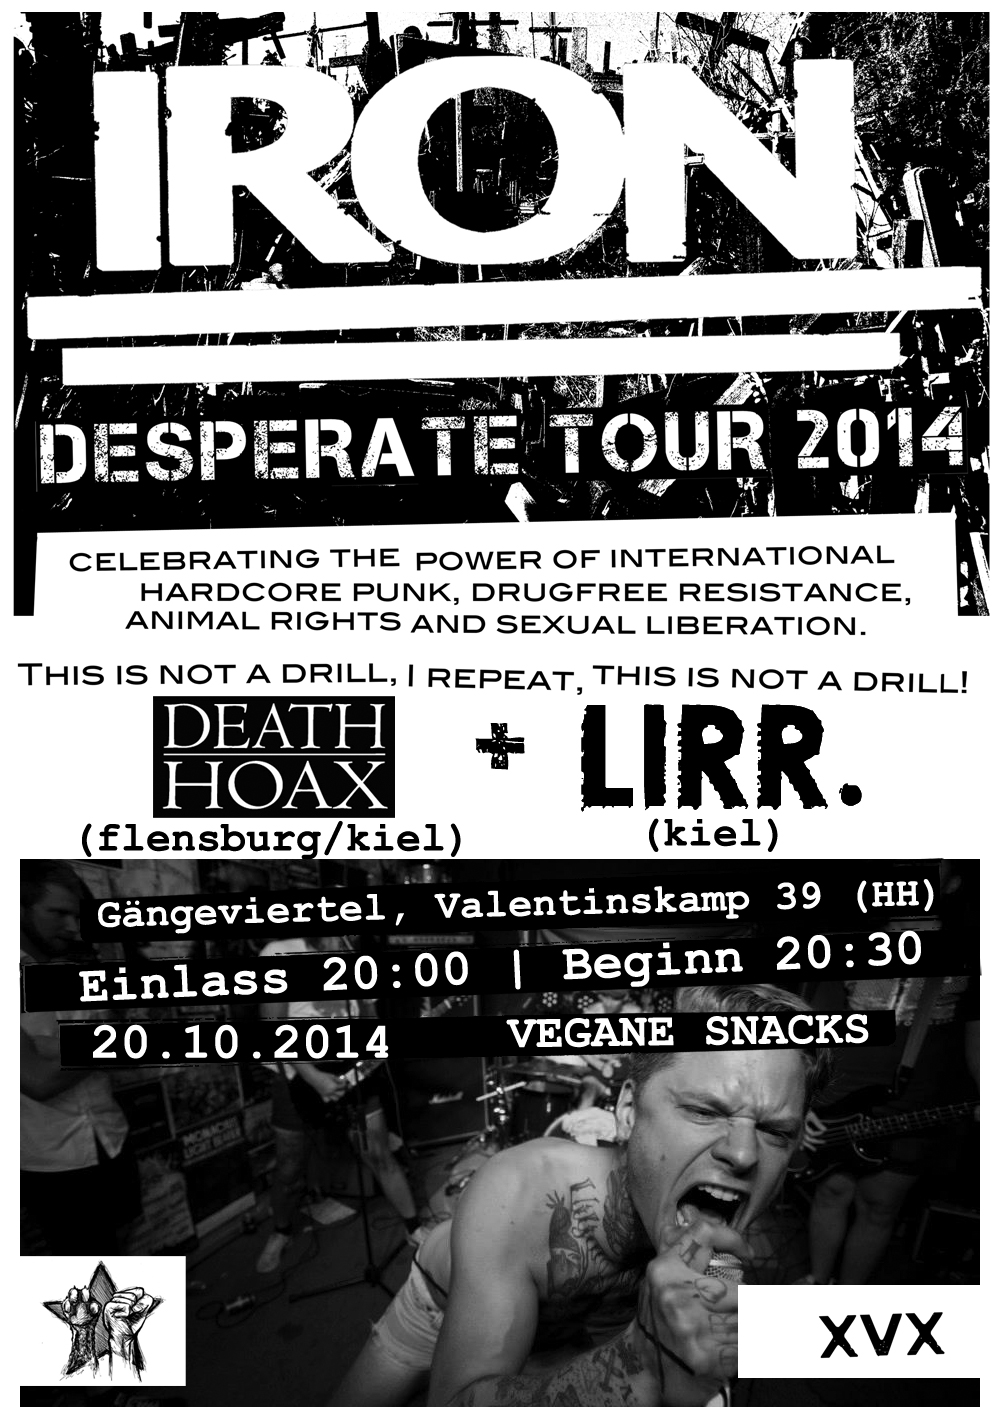 Konzert mit IRON am 20.10 + DEATH HOAX + LIRR.